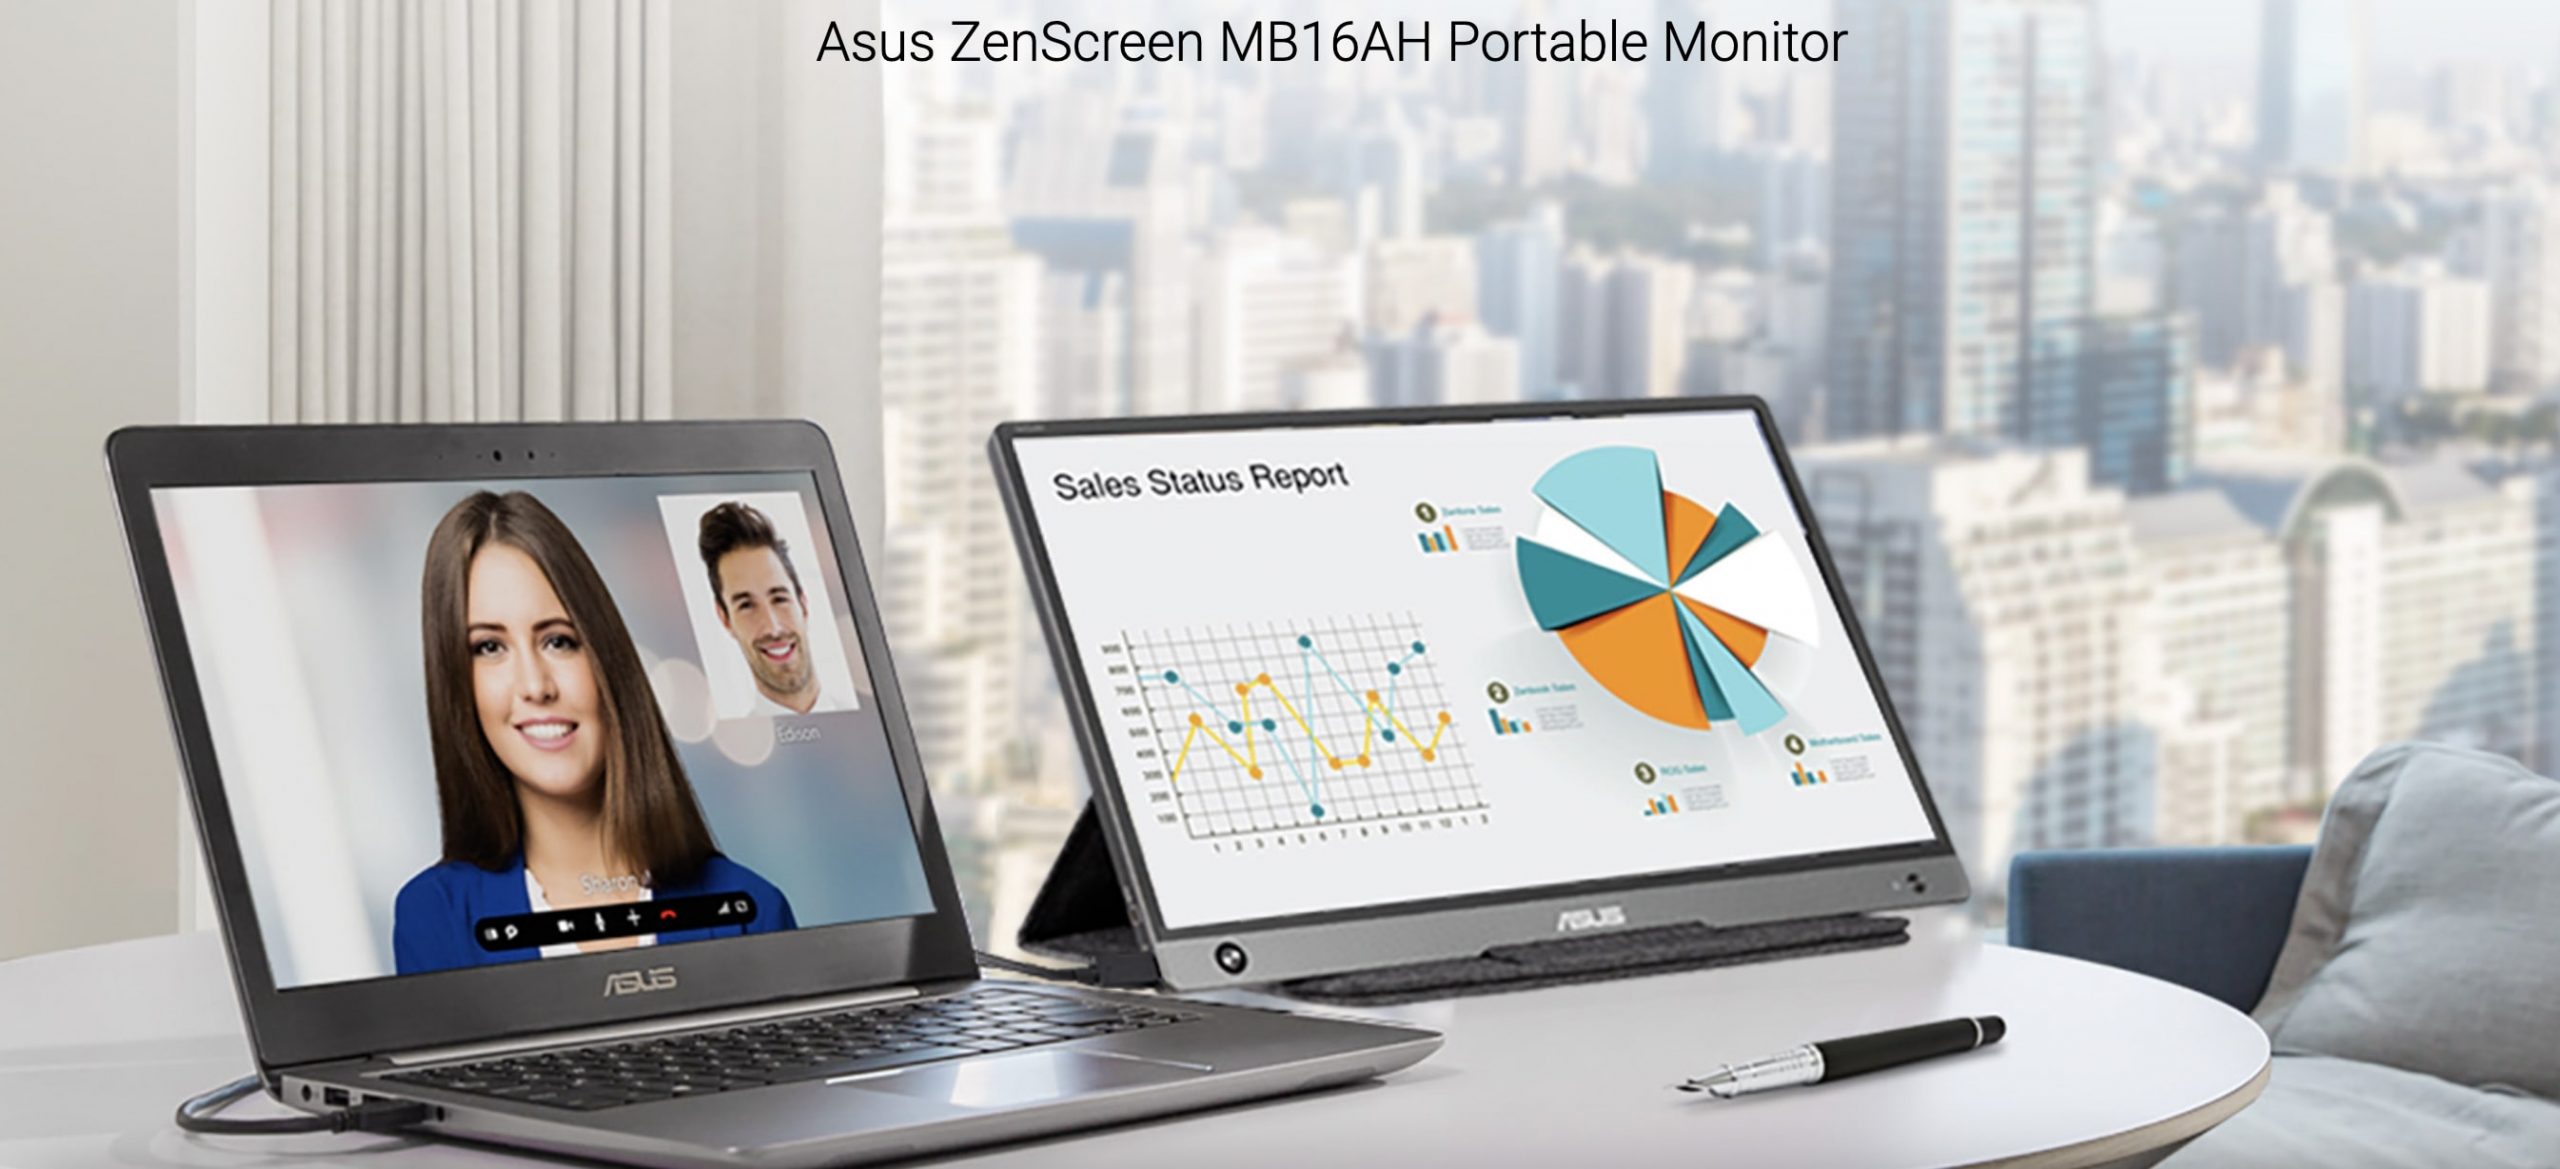 Asus ZenScreen MB168AH